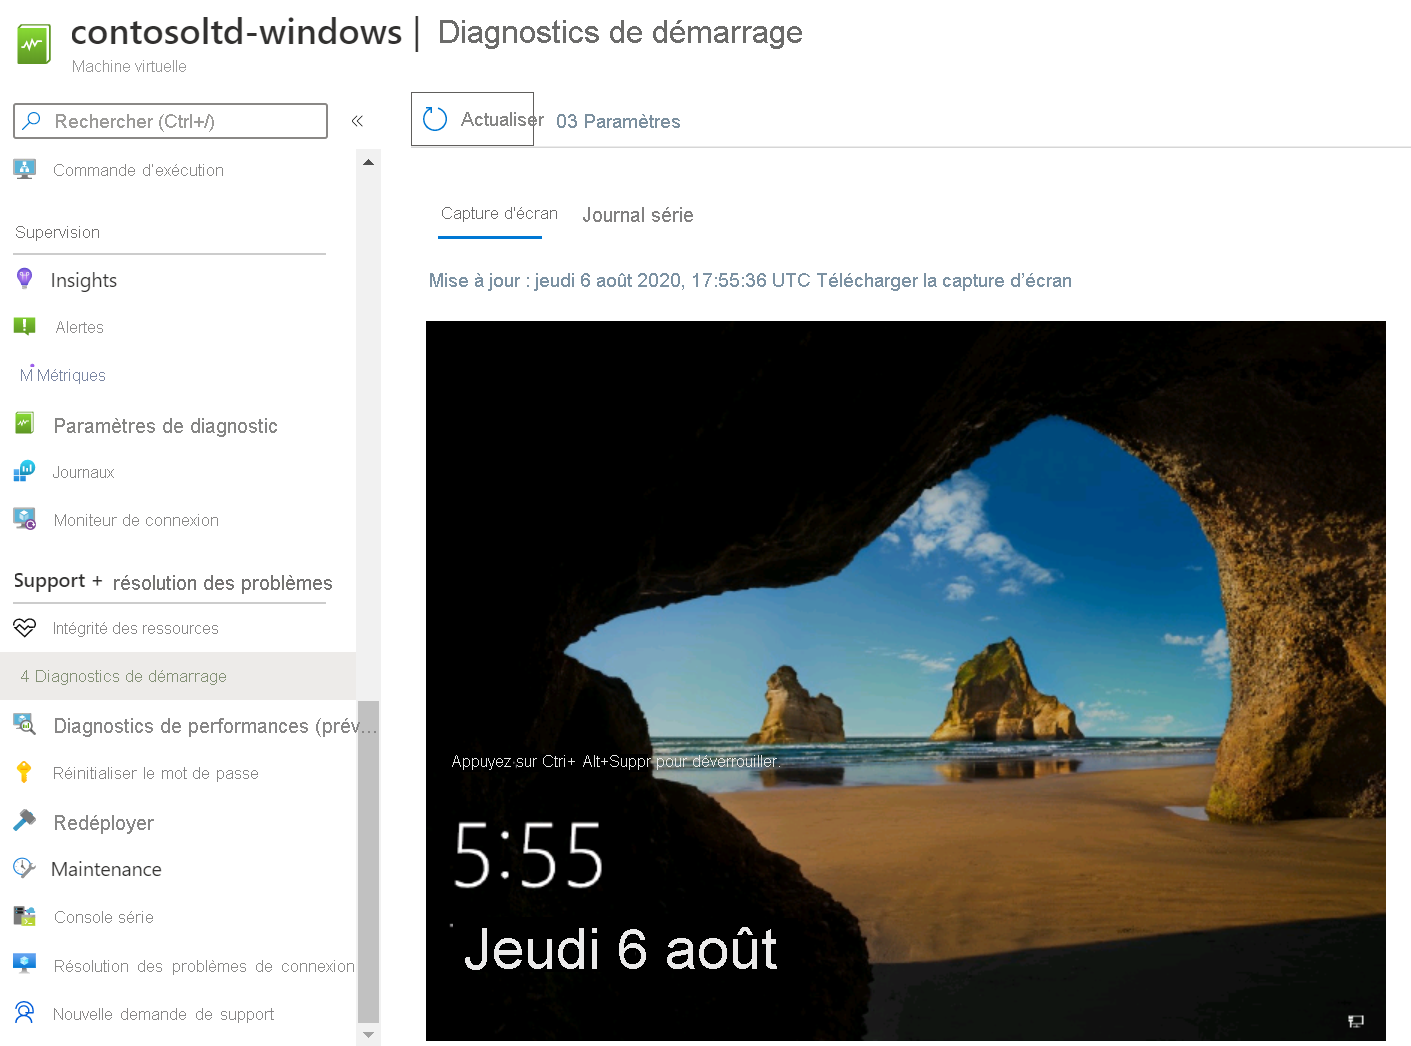 Capture d’écran des diagnostics de démarrage Windows